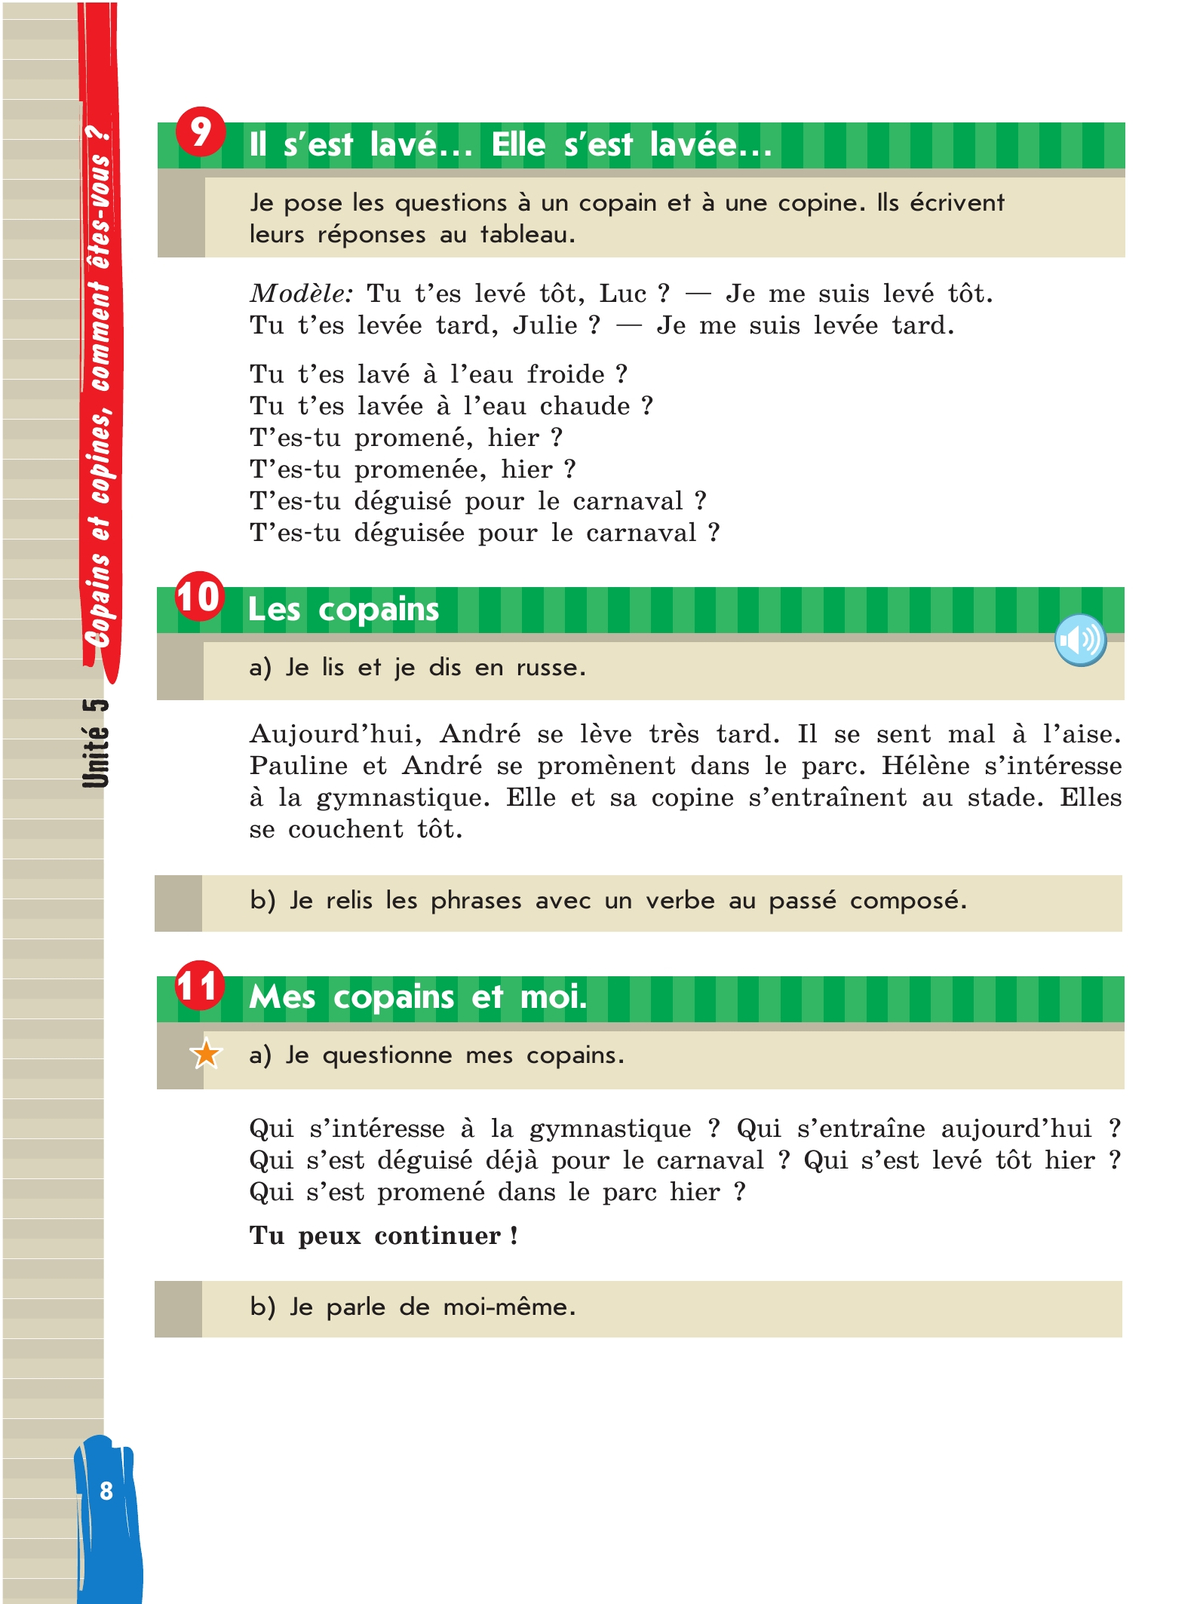 Французский язык. 5 класс. Учебник. В 2 ч. Часть 2 5